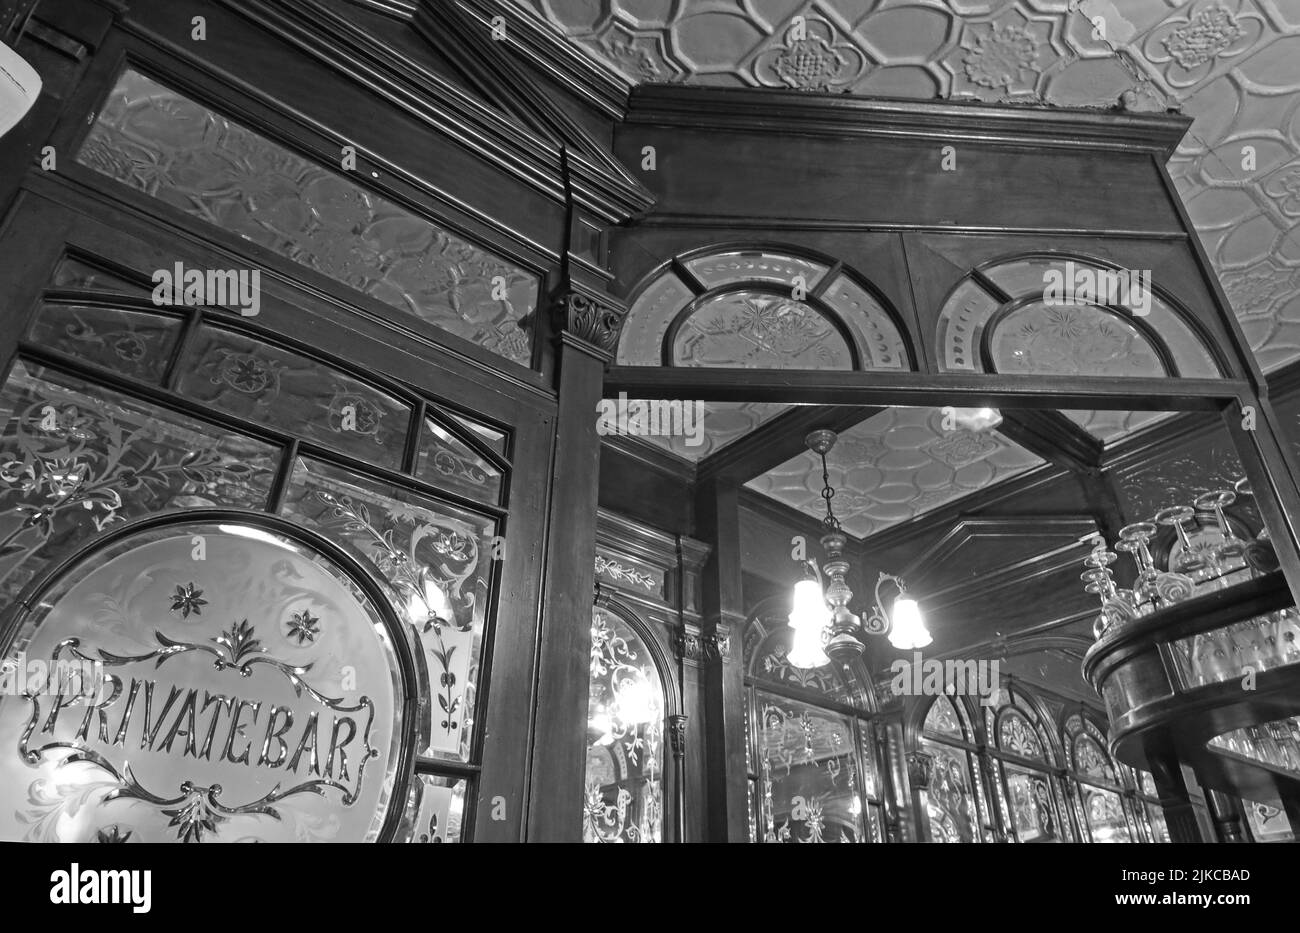 Immagine monocromatica BW delle porte decorate del bar privato, al Red Lion, 2 Duke of York St, Mayfair, Londra, Inghilterra, Regno Unito, SW1Y 6JP Foto Stock